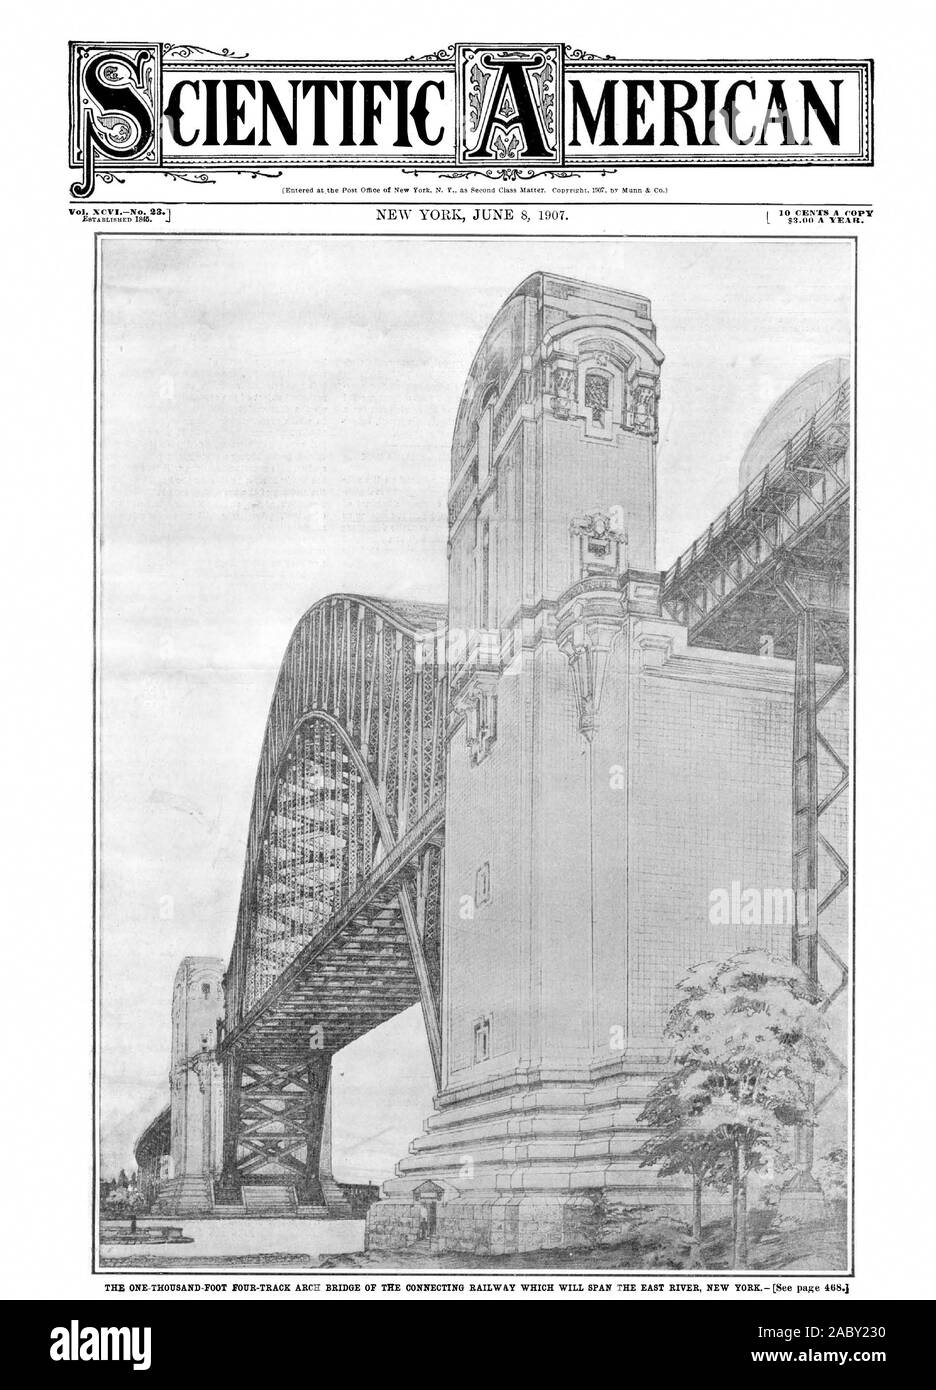 Vol. XCVINo. MERICA 23,1, Scientific American, 1907-06-08, le mille pieds quatre ponts en arc de la voie de chemin de fer reliant qui couvrent l'East River, New York Banque D'Images